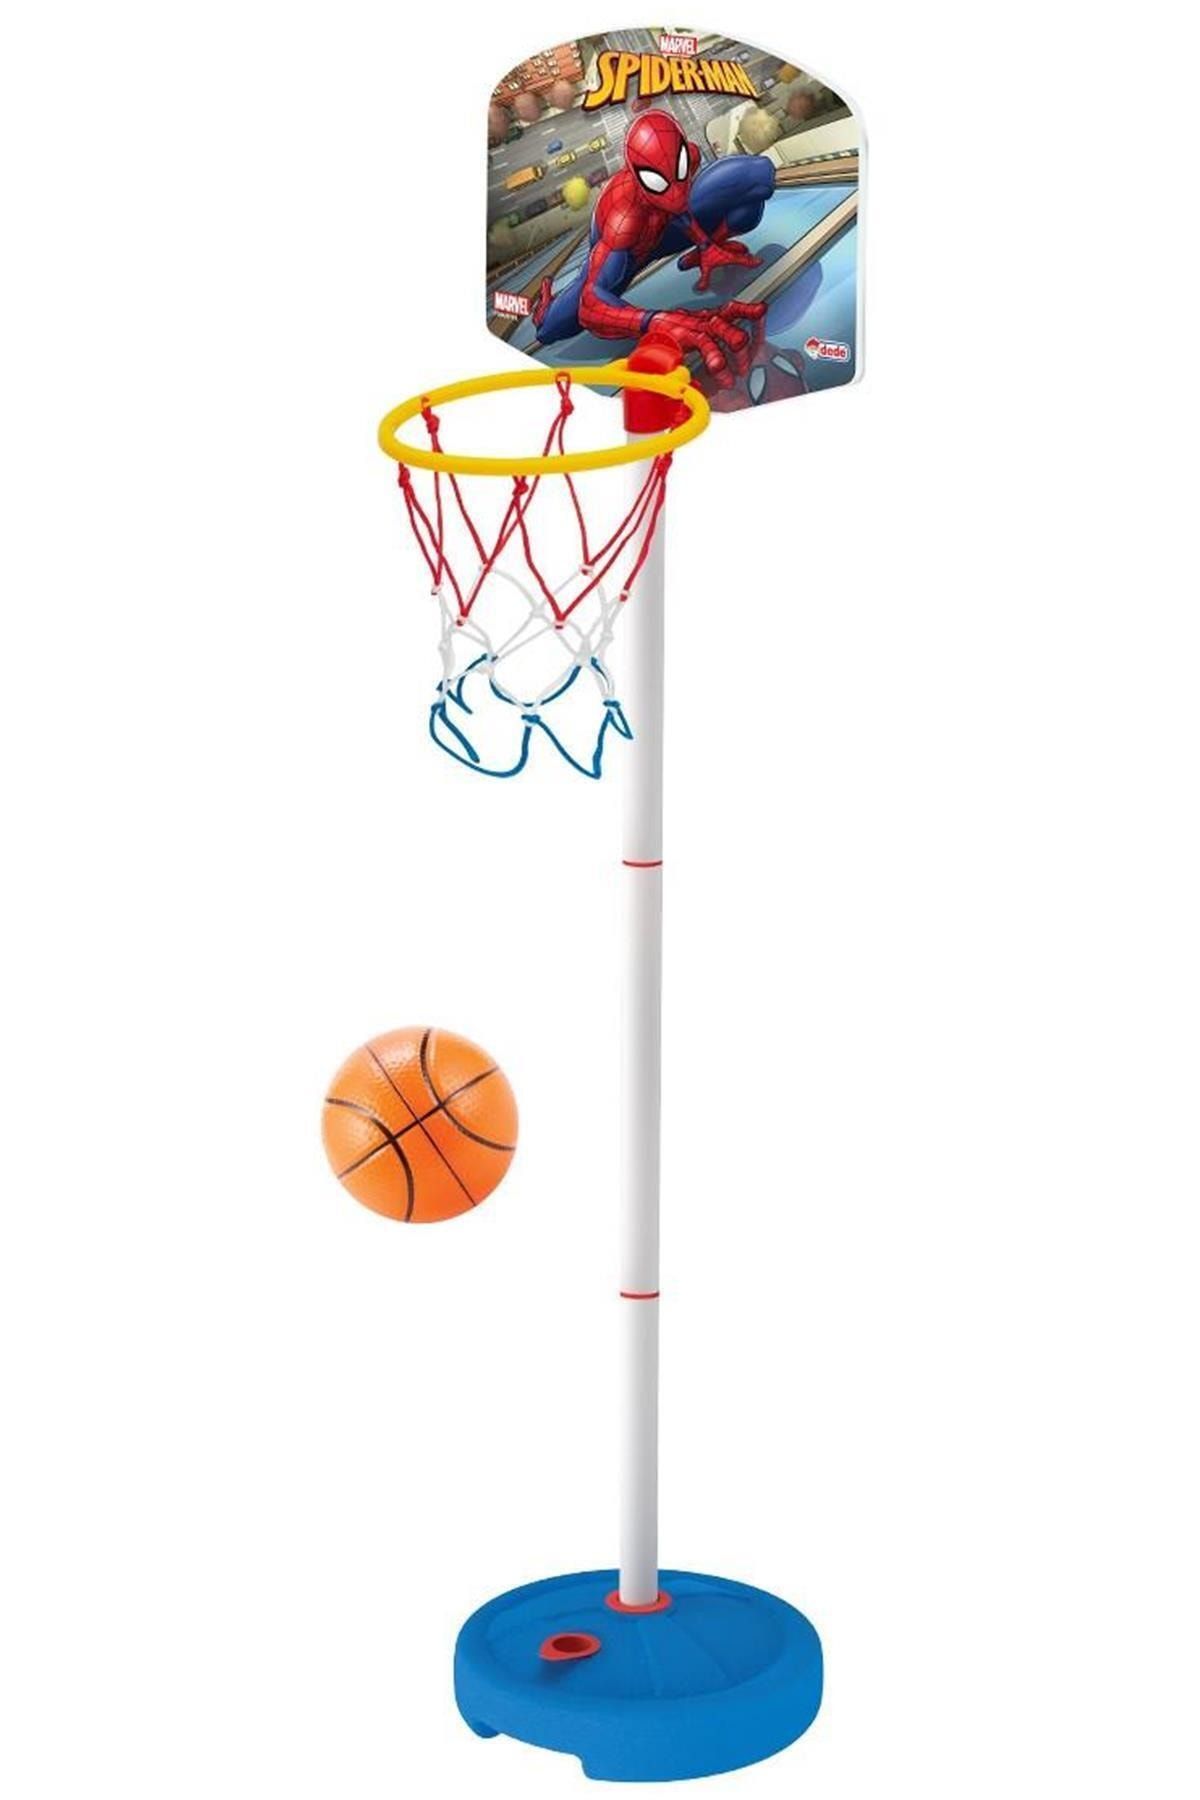 DEDE Marka: Spiderman Küçük Ayaklı Basketbol Potası Kategori: Basketbol Potası